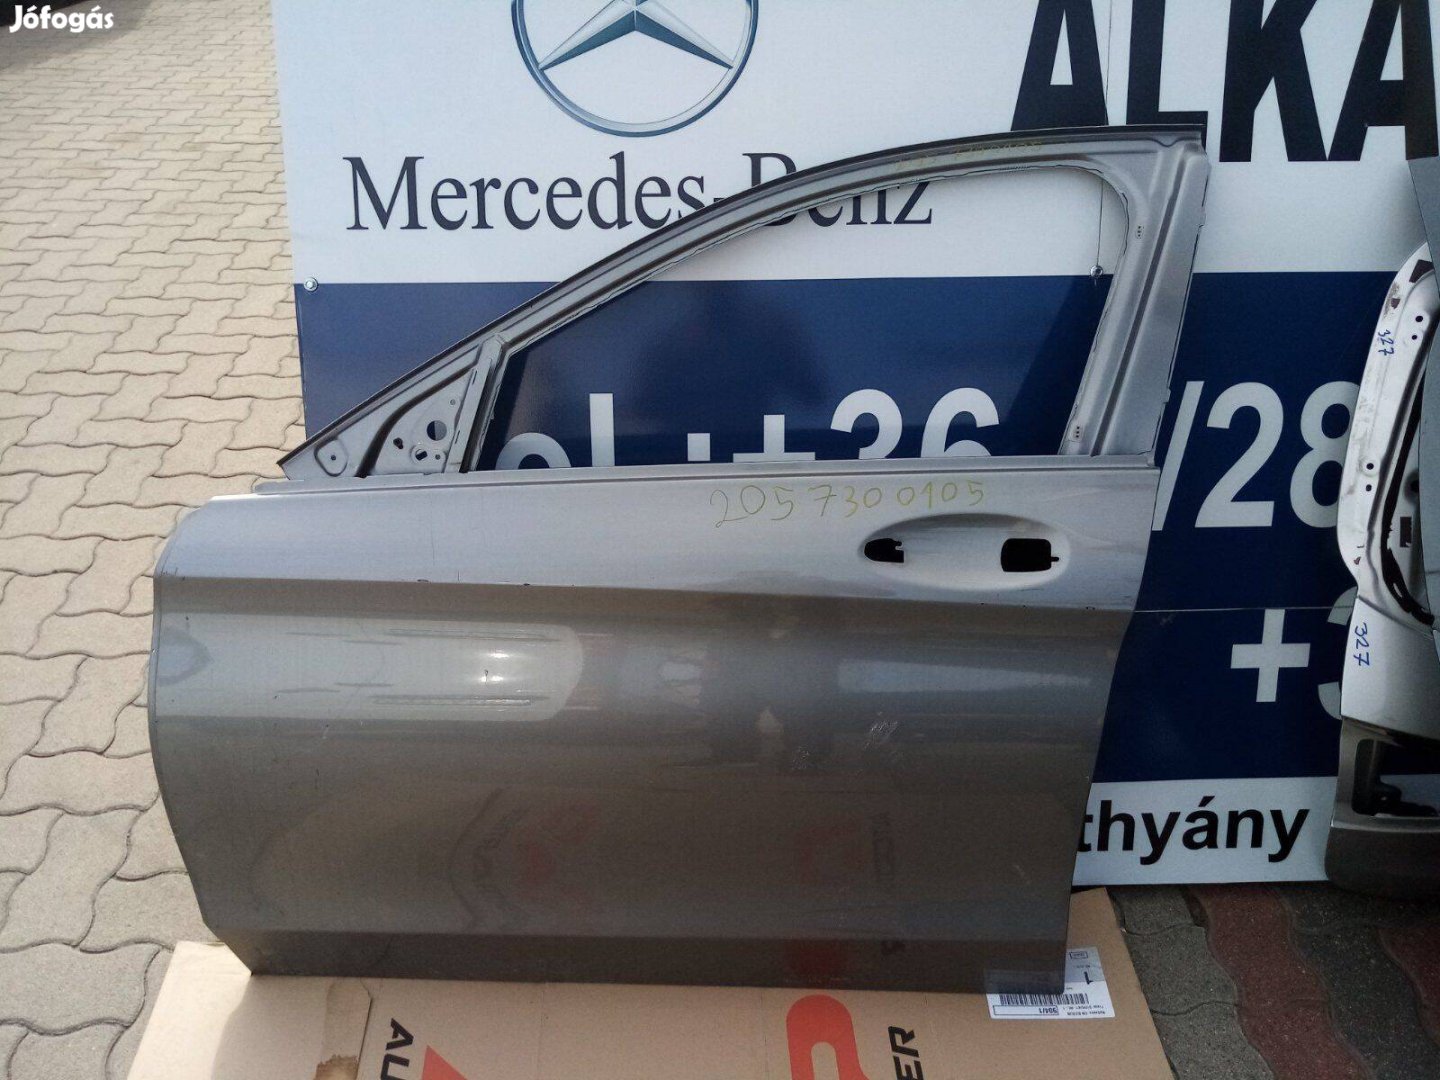 Mercedes C-Klasse w205 Bal első ajtó eladó. Cikkszám:2057300105